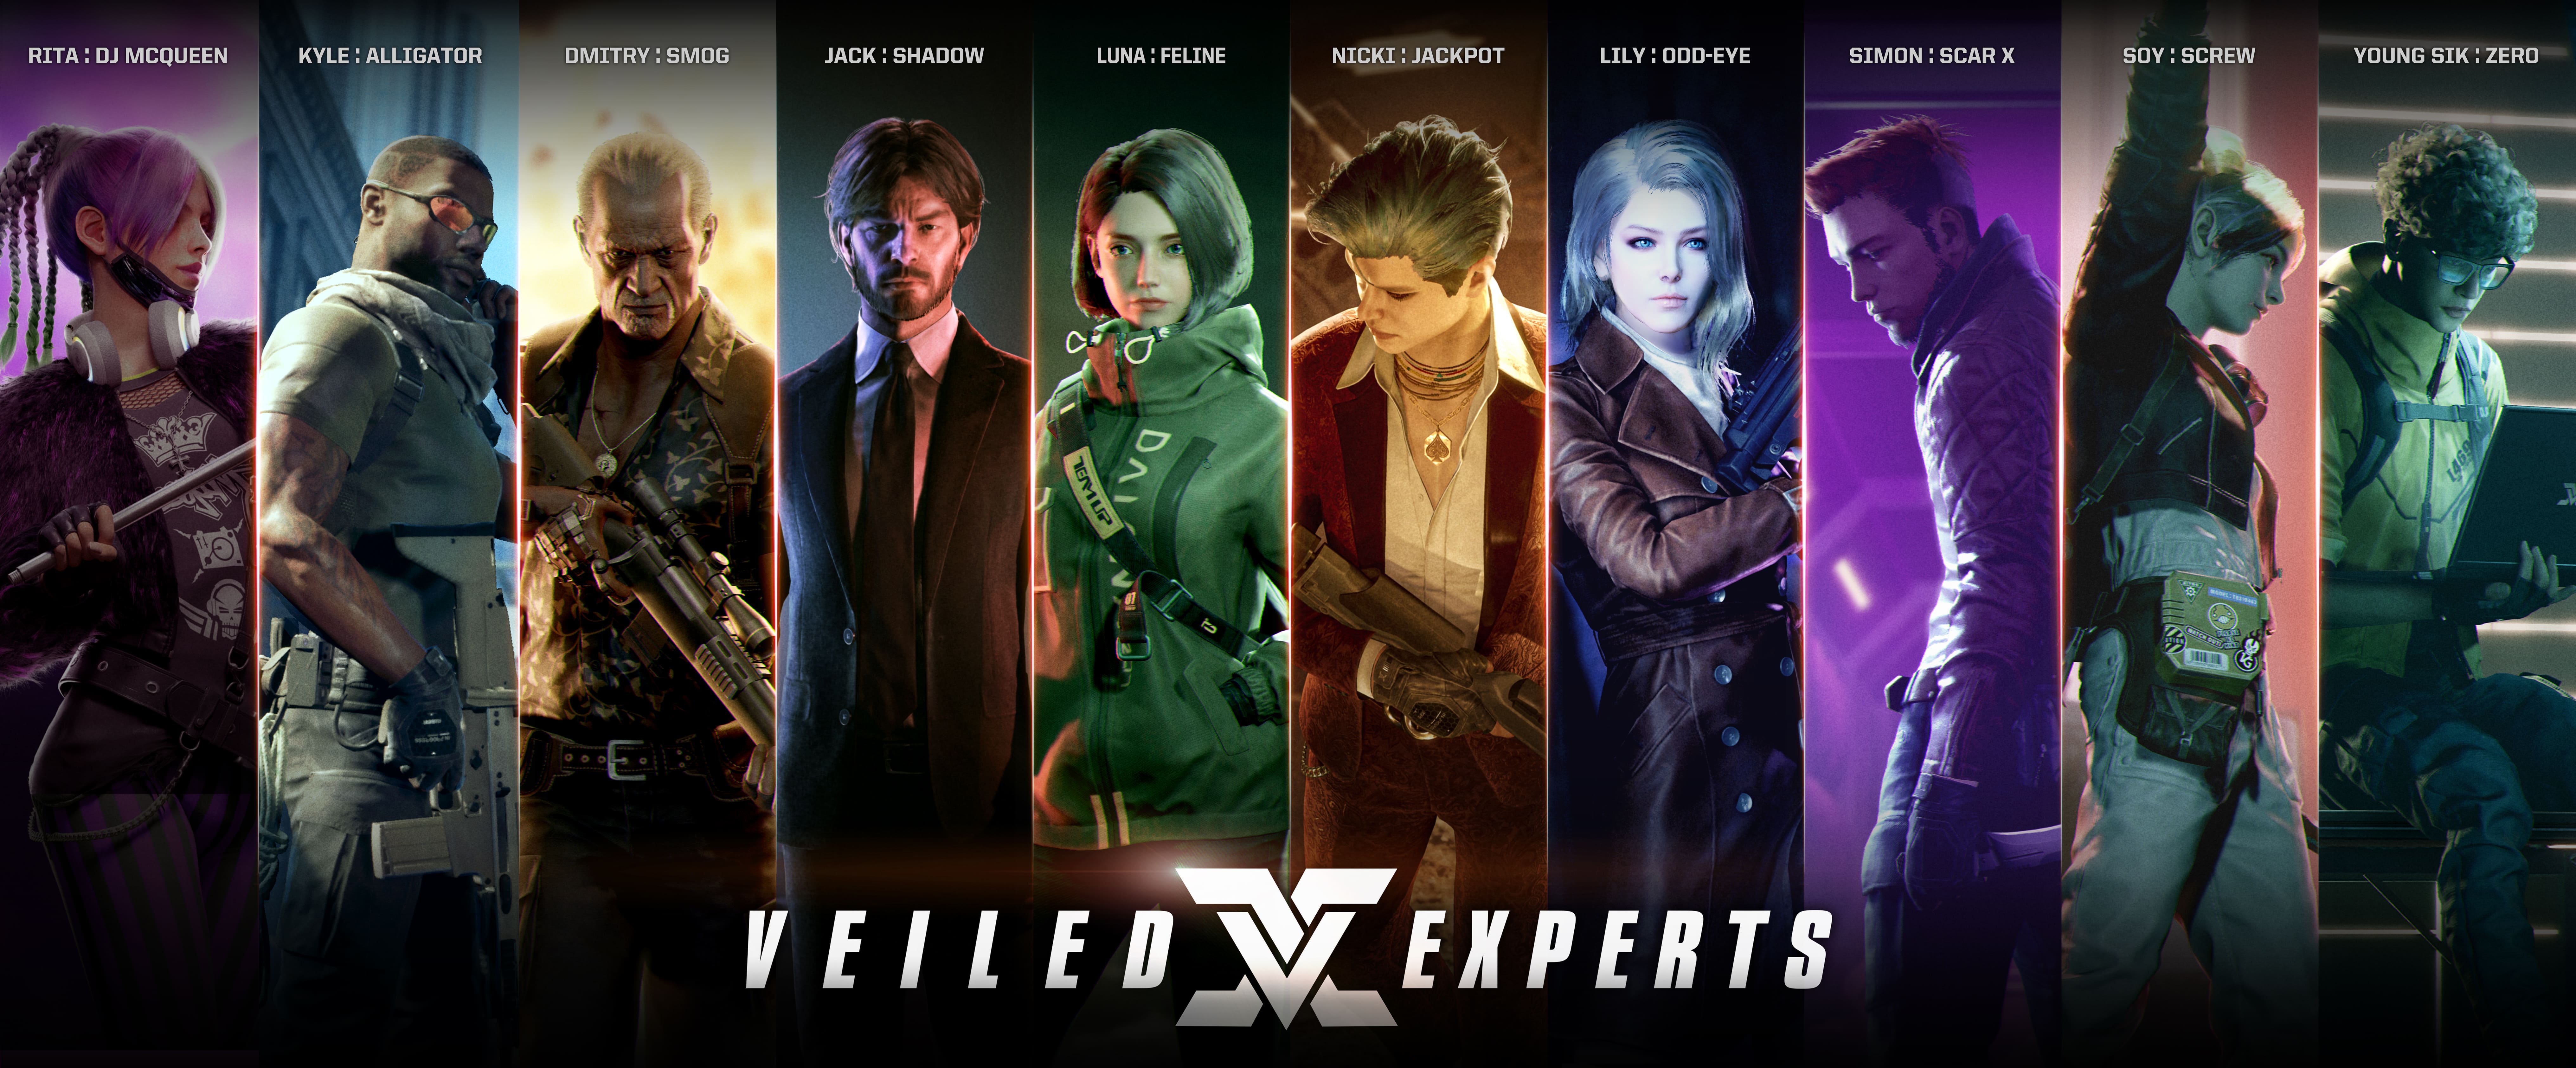 竞技射击游戏《幕后高手 Veiled Experts》5月19日推出抢先体验版